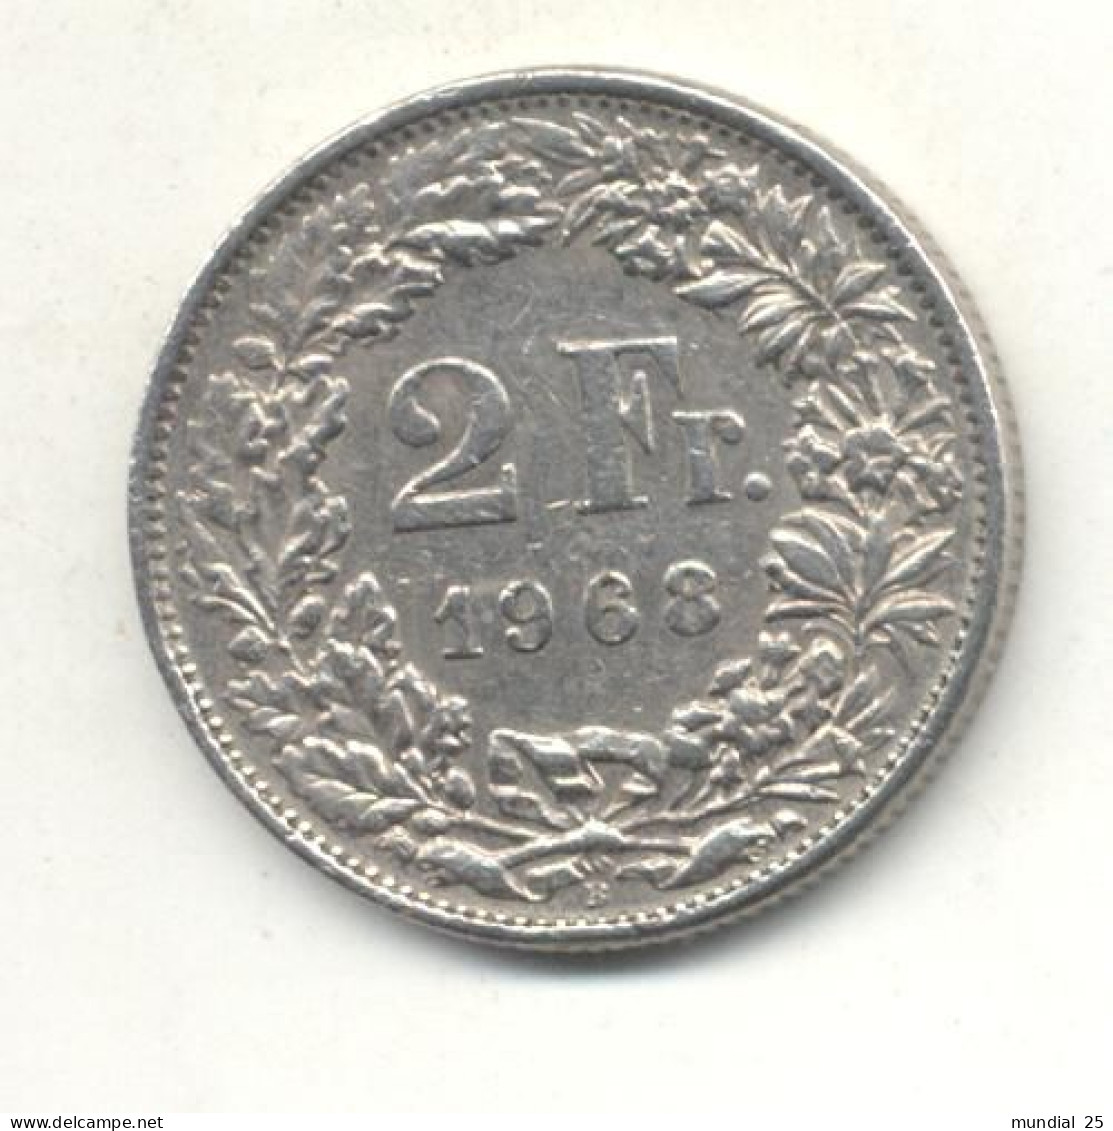 SWITZERLAND 2 FRANCS 1968 B - 2 Francs